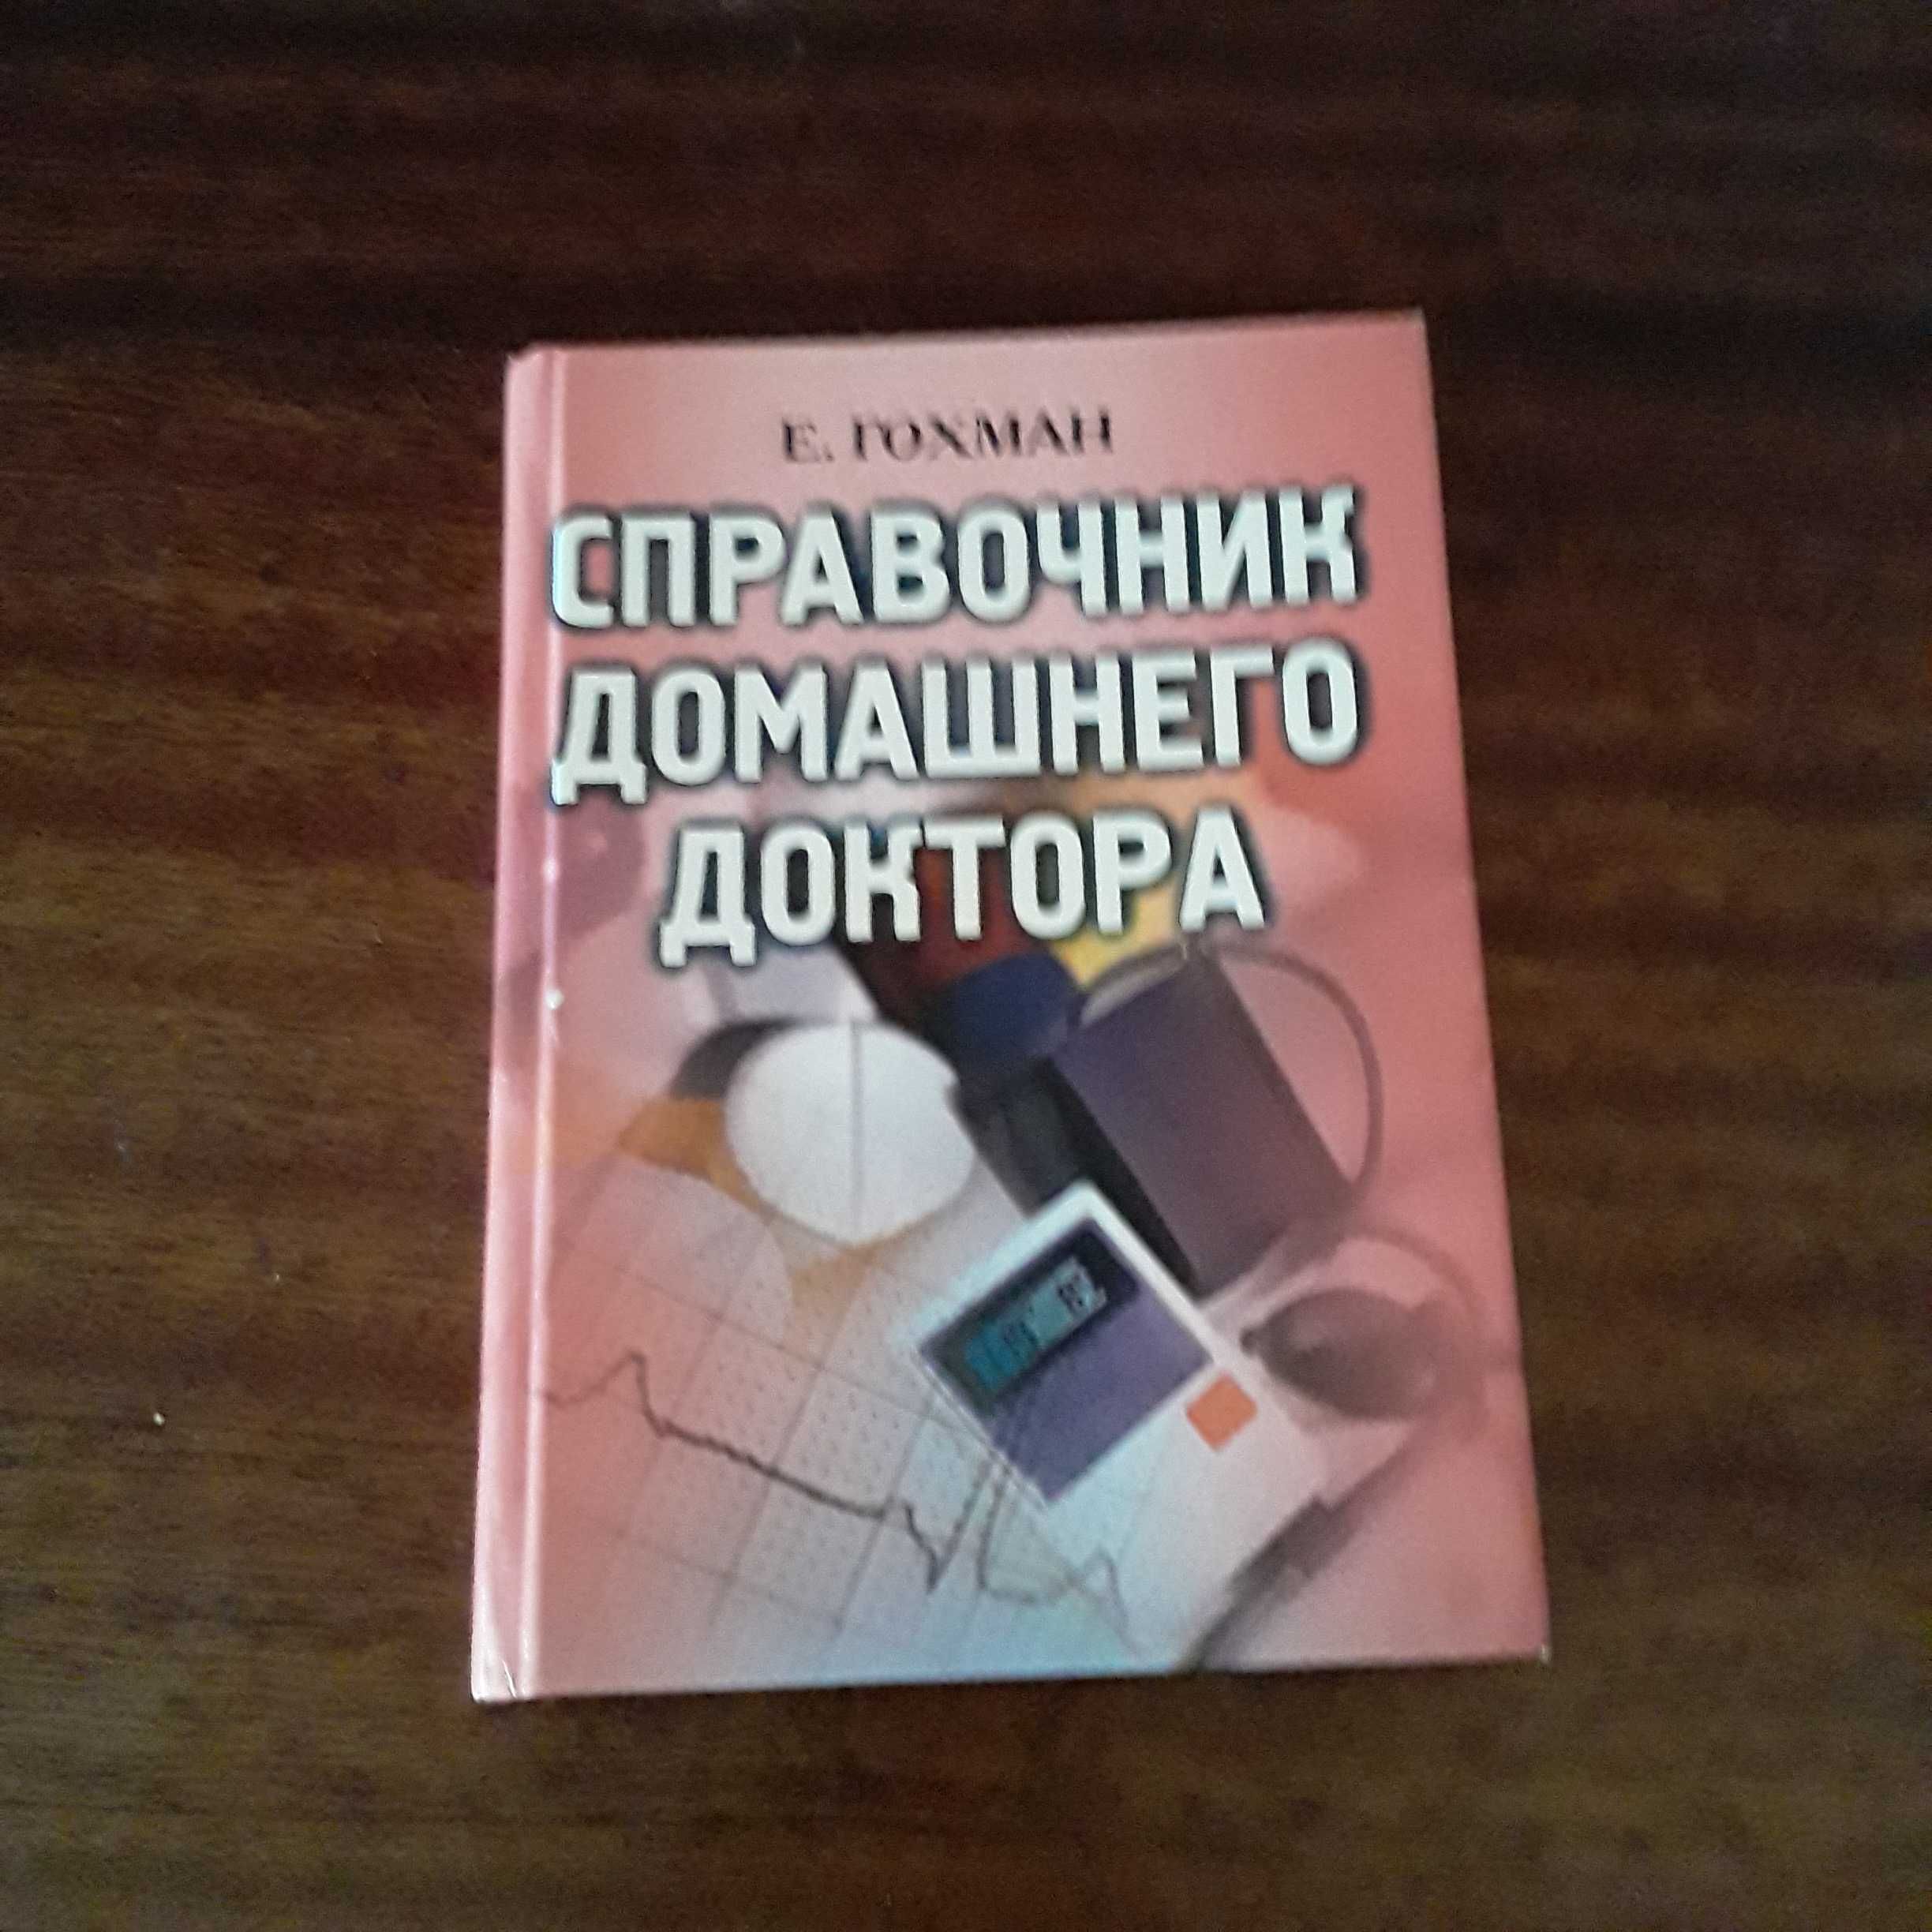 медицинский справочник, книга домашней мед сестры